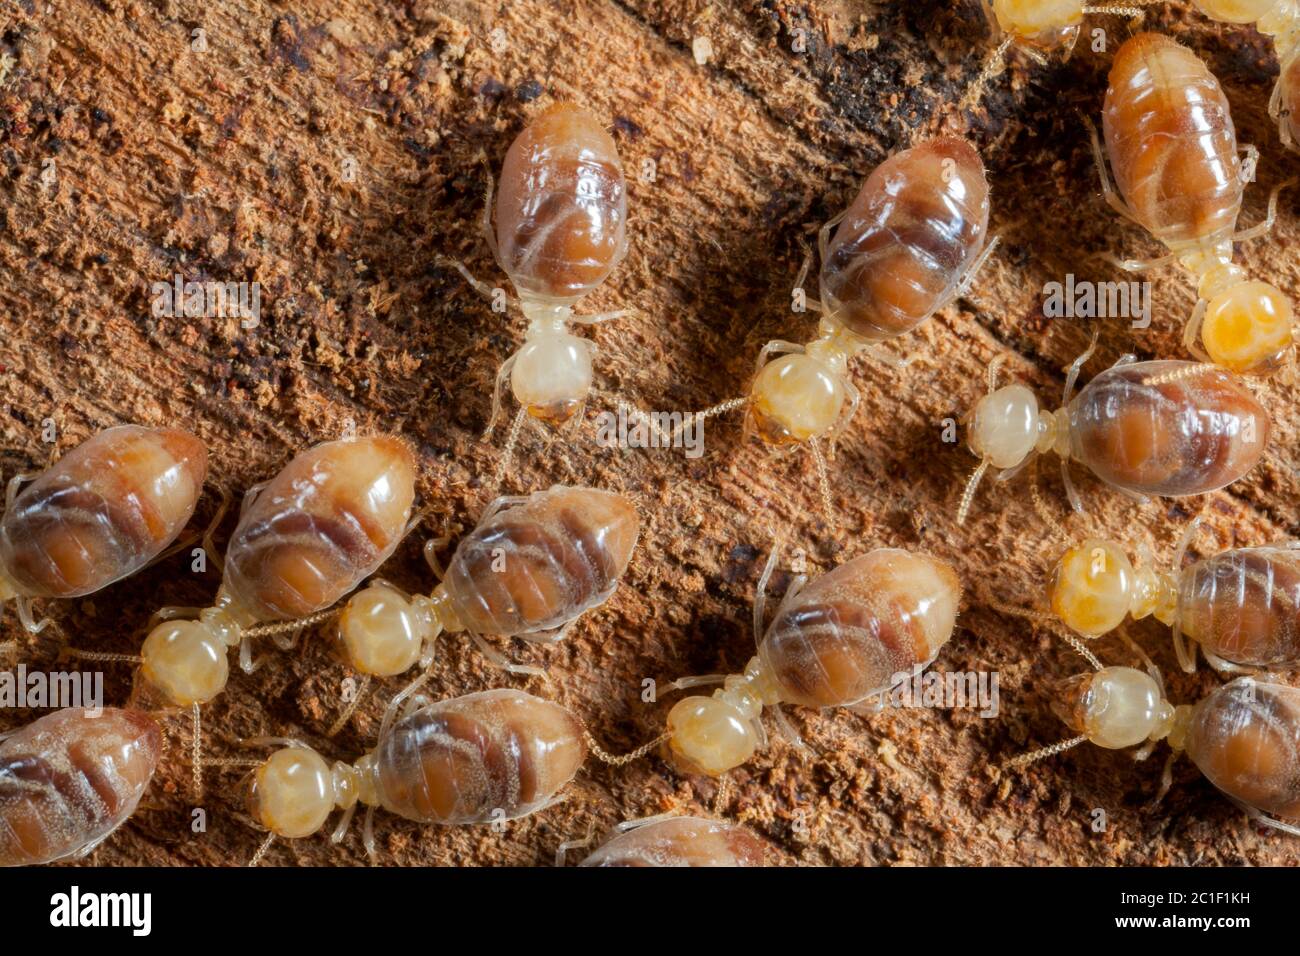 Les insectes termites dans la colonie sur le bois Banque D'Images